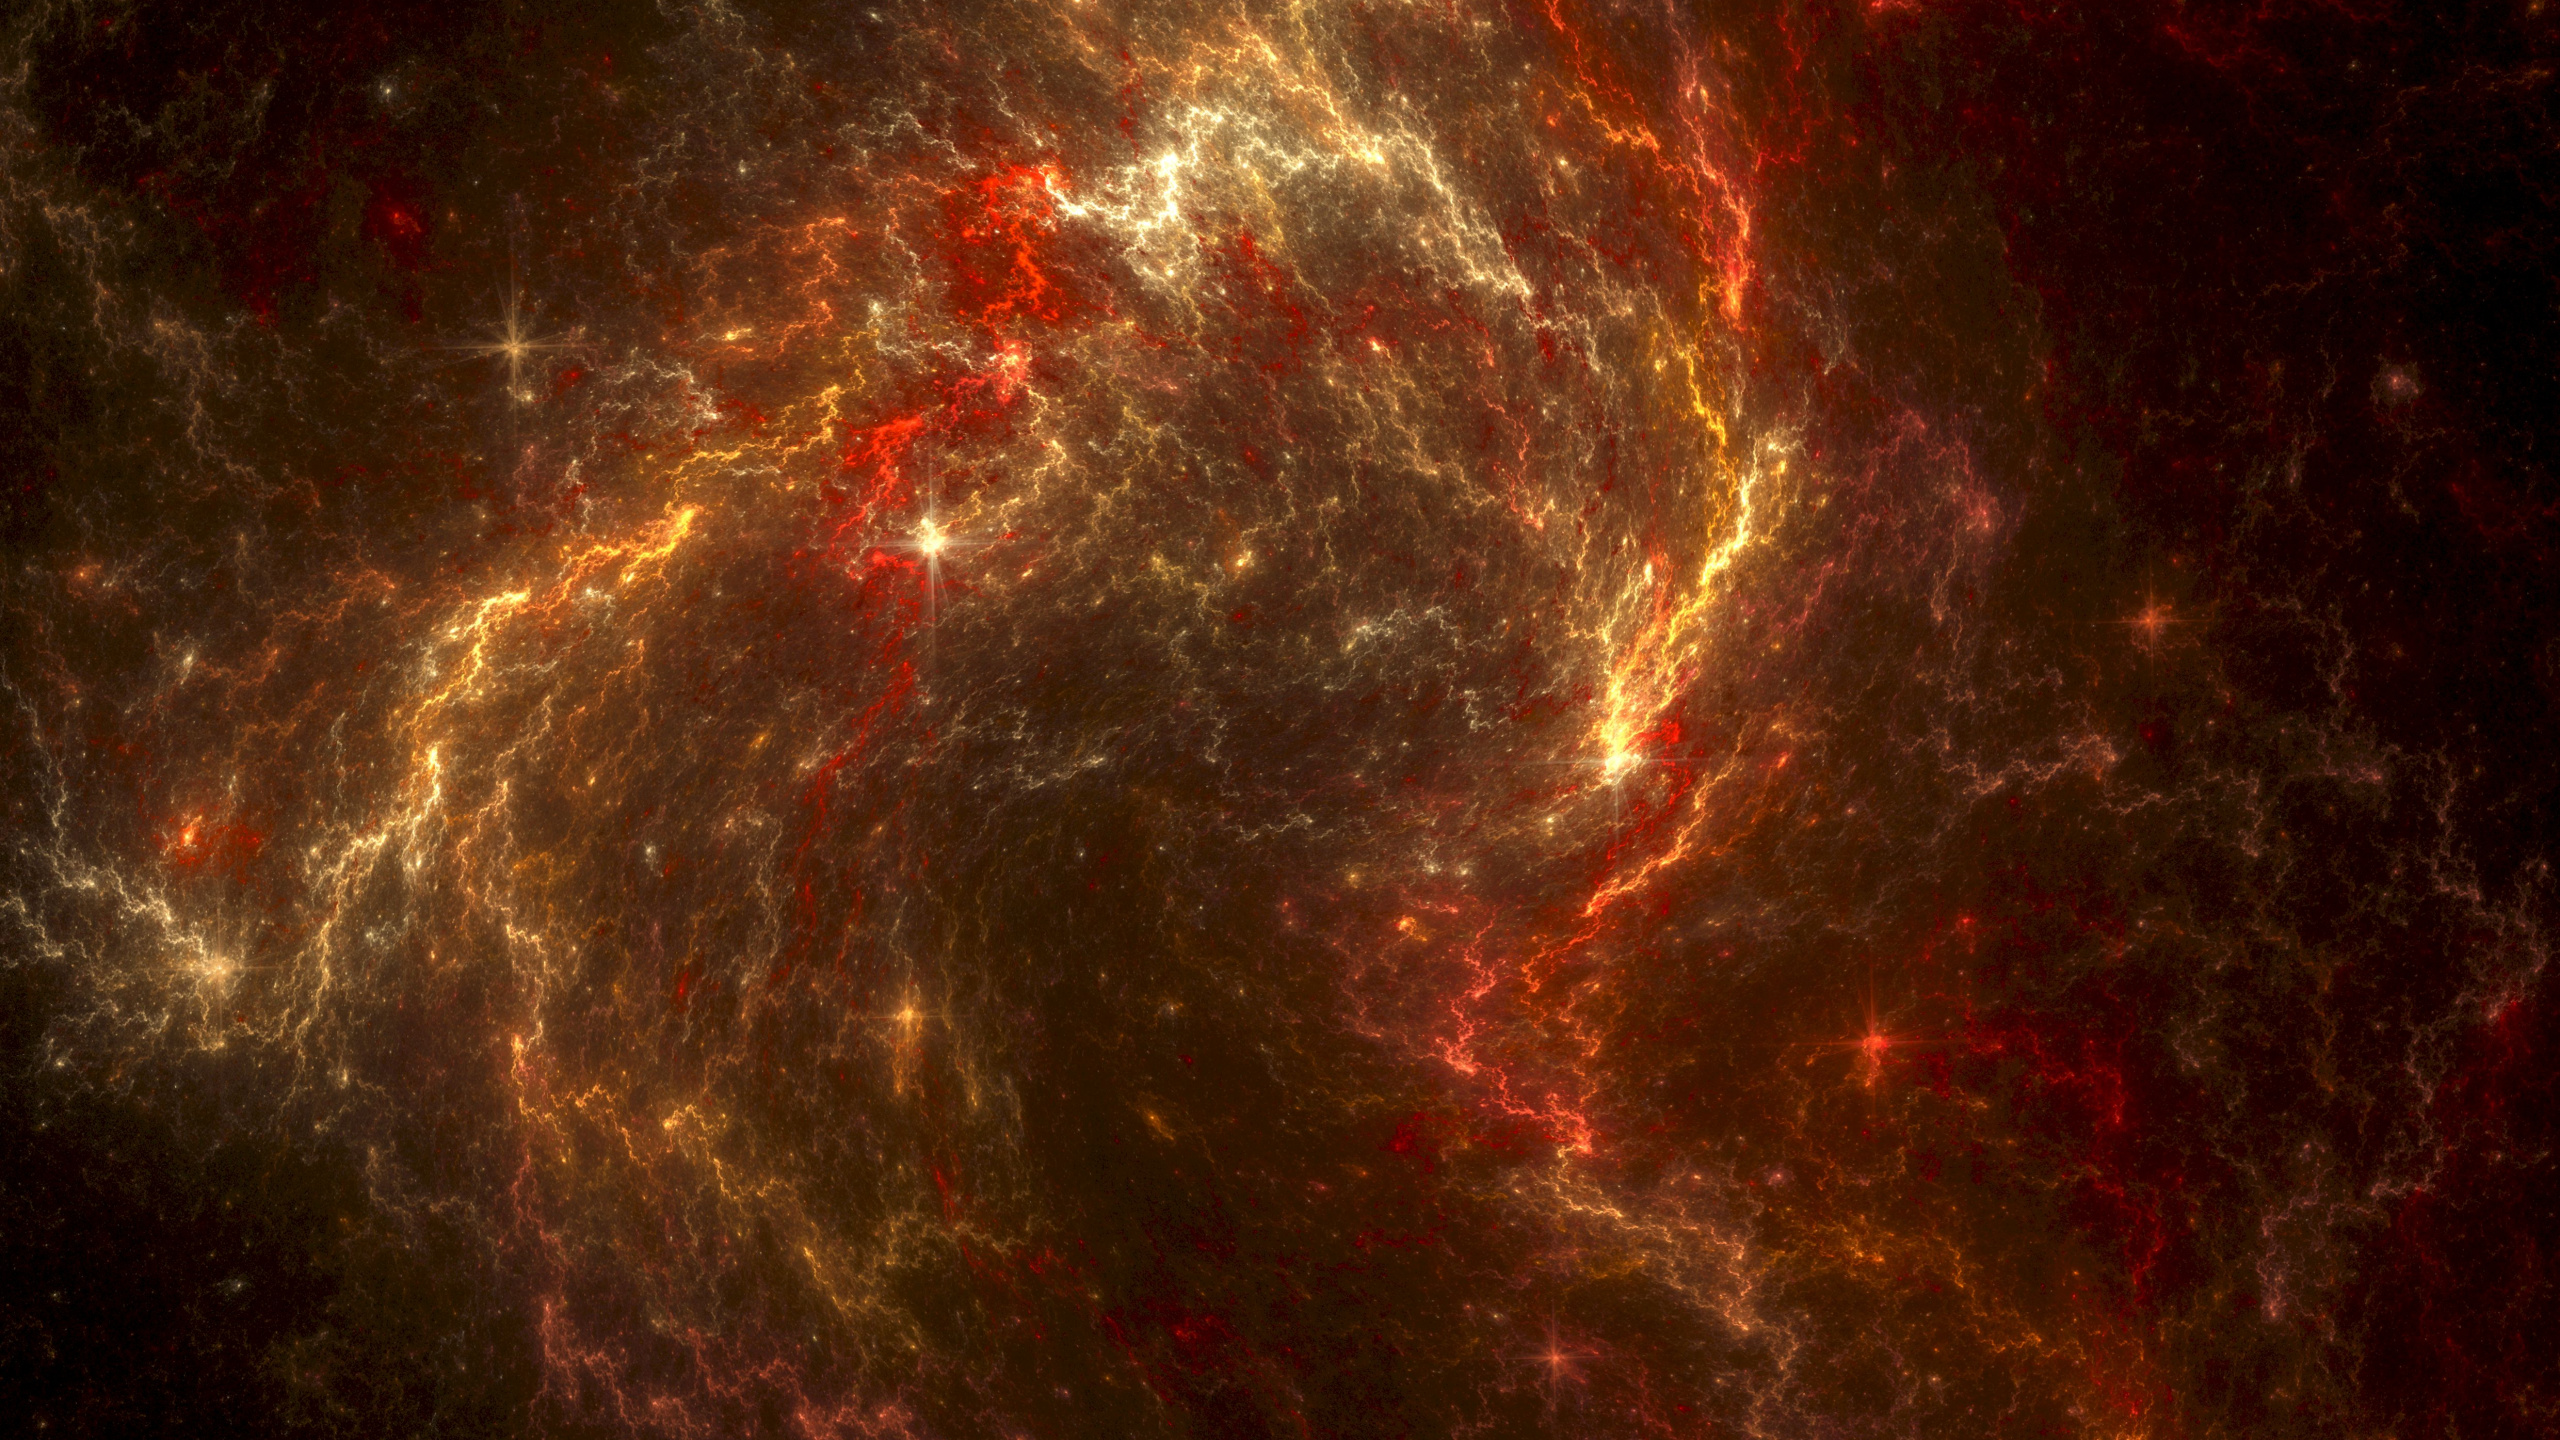 分形, 红色的, 天文学对象, 外层空间, 宇宙 壁纸 2560x1440 允许